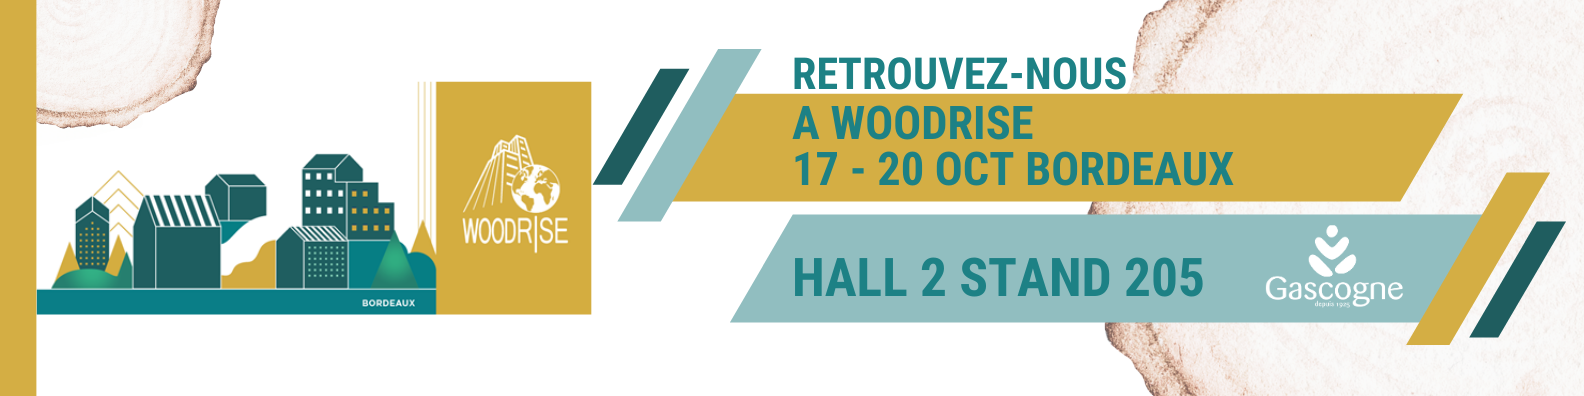 Participation à Woodrise Bordeaux du 17 au 20 octobre